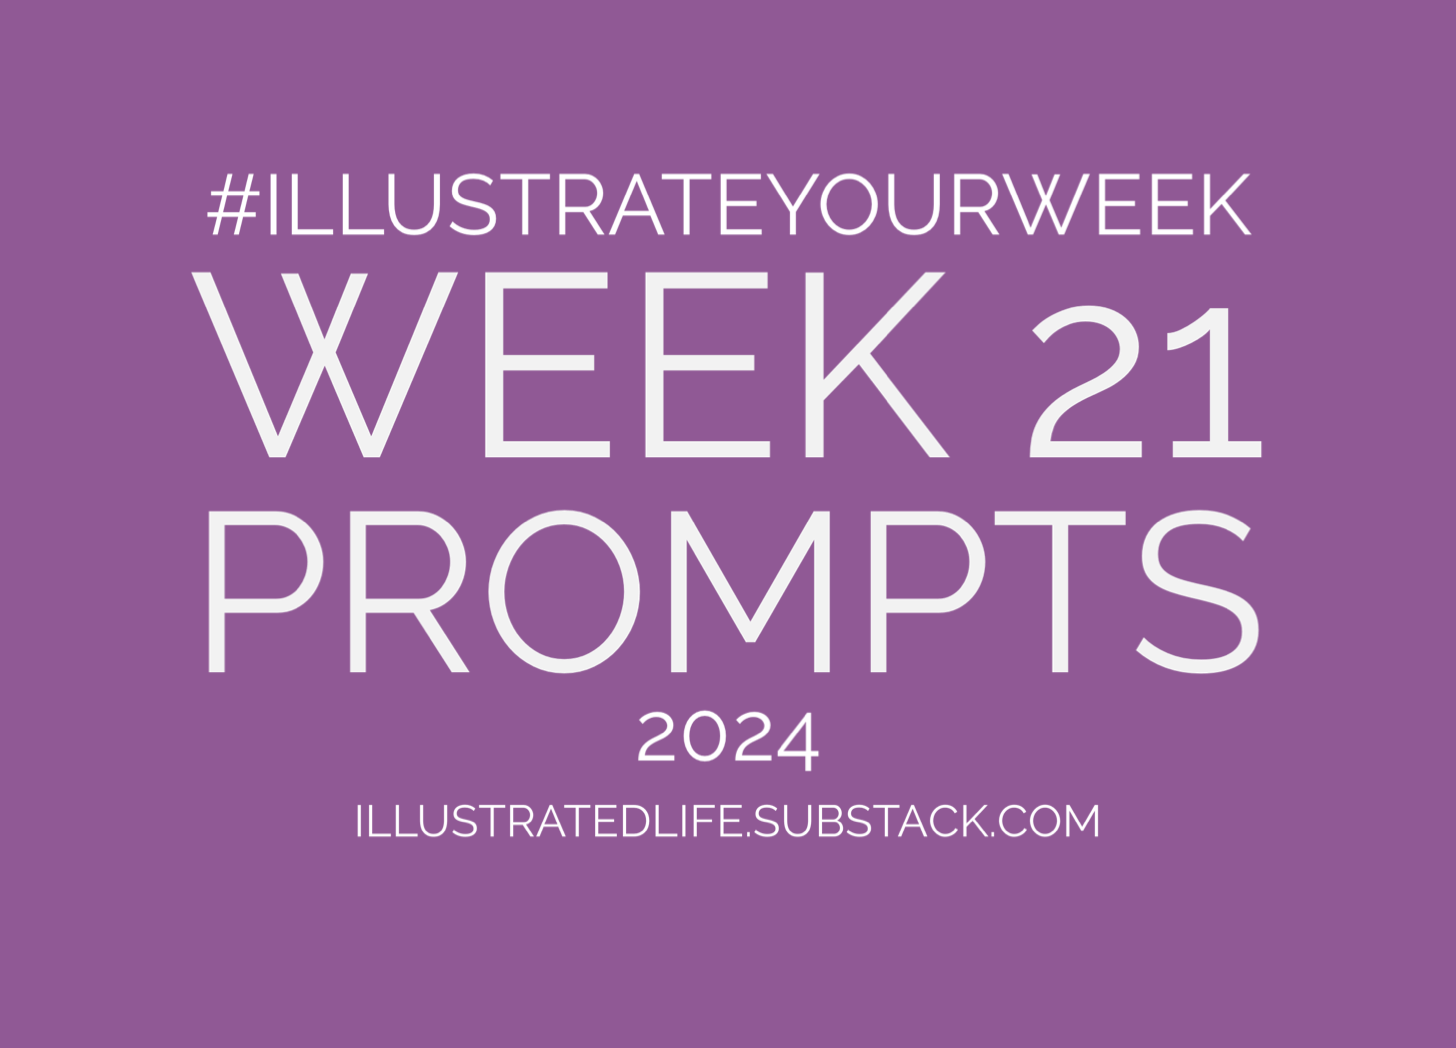 Week 21 illustrate your week prompts